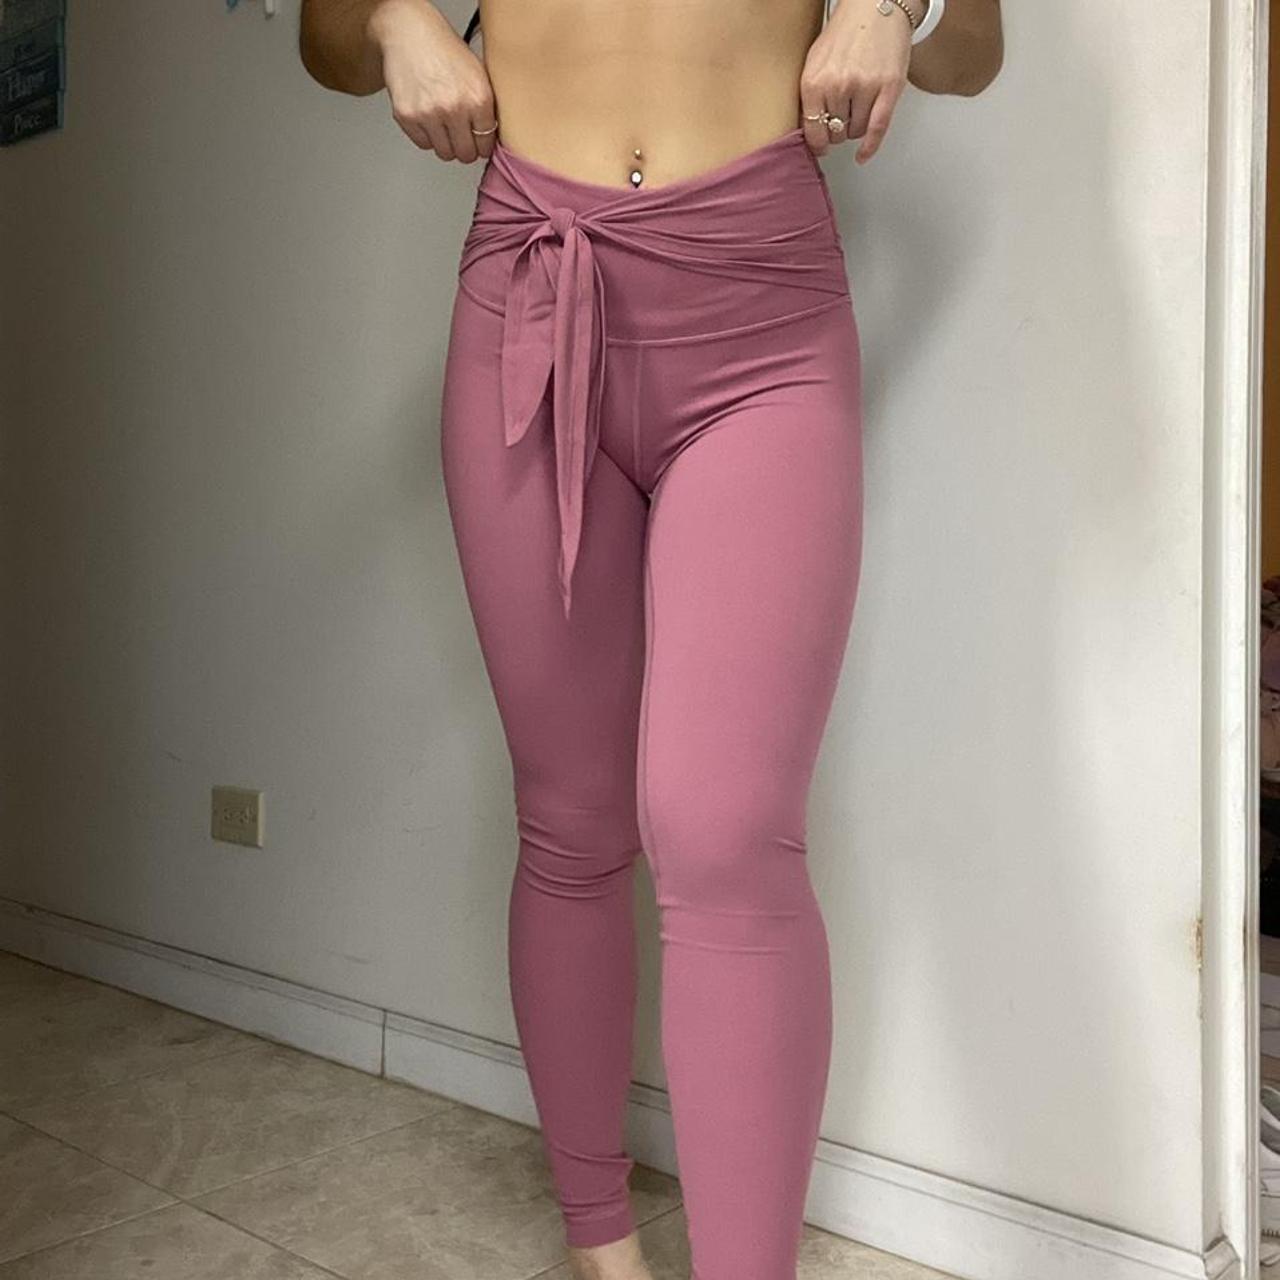 pink lululemon align leggings *high waisted, full - Depop